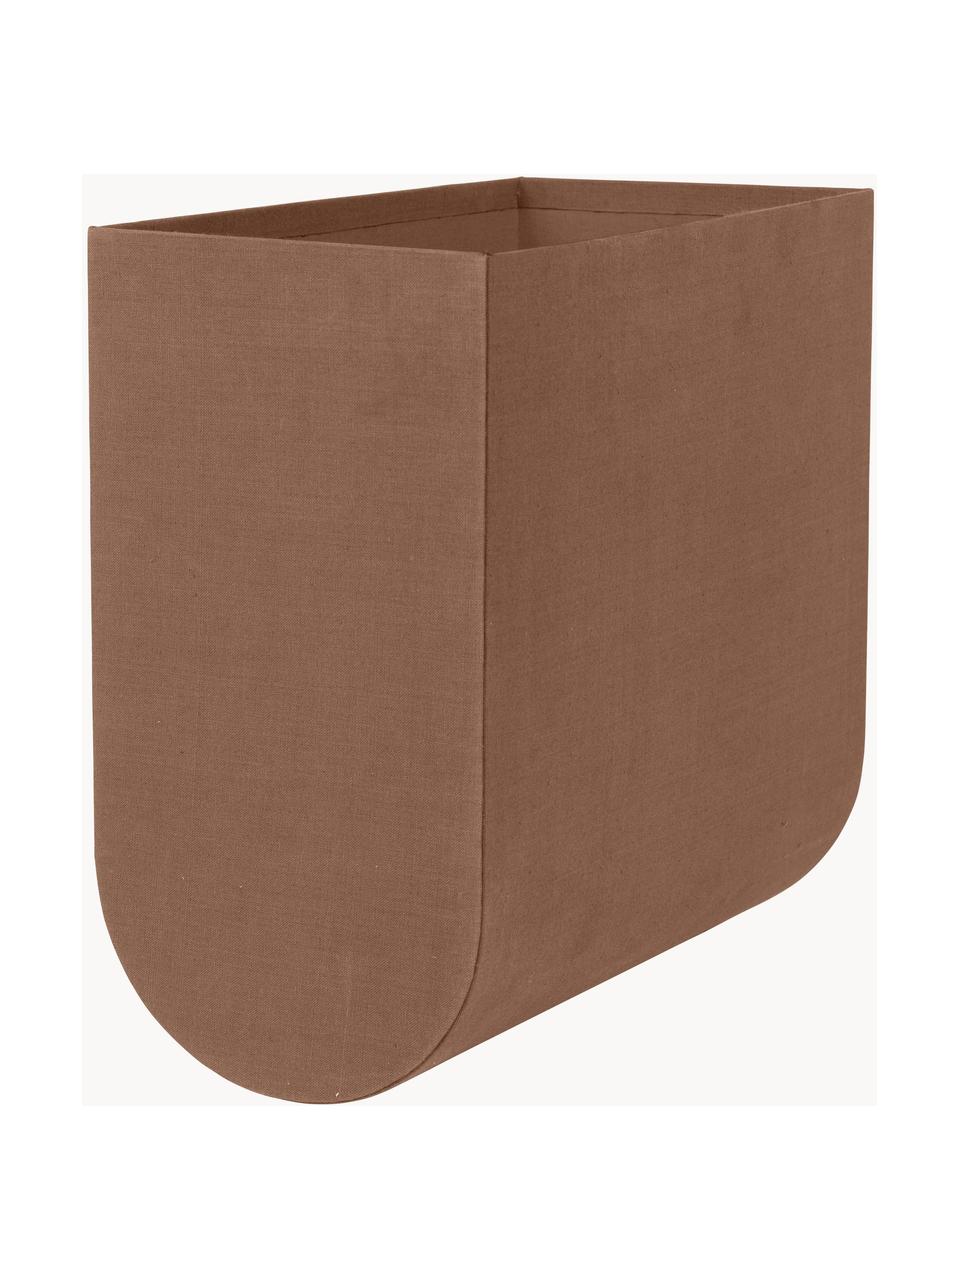 Caja artesanal Curved, An 20 cm, Funda: 100% algodón, Estructura: cartón, Marrón, An 20 x Al 39 cm